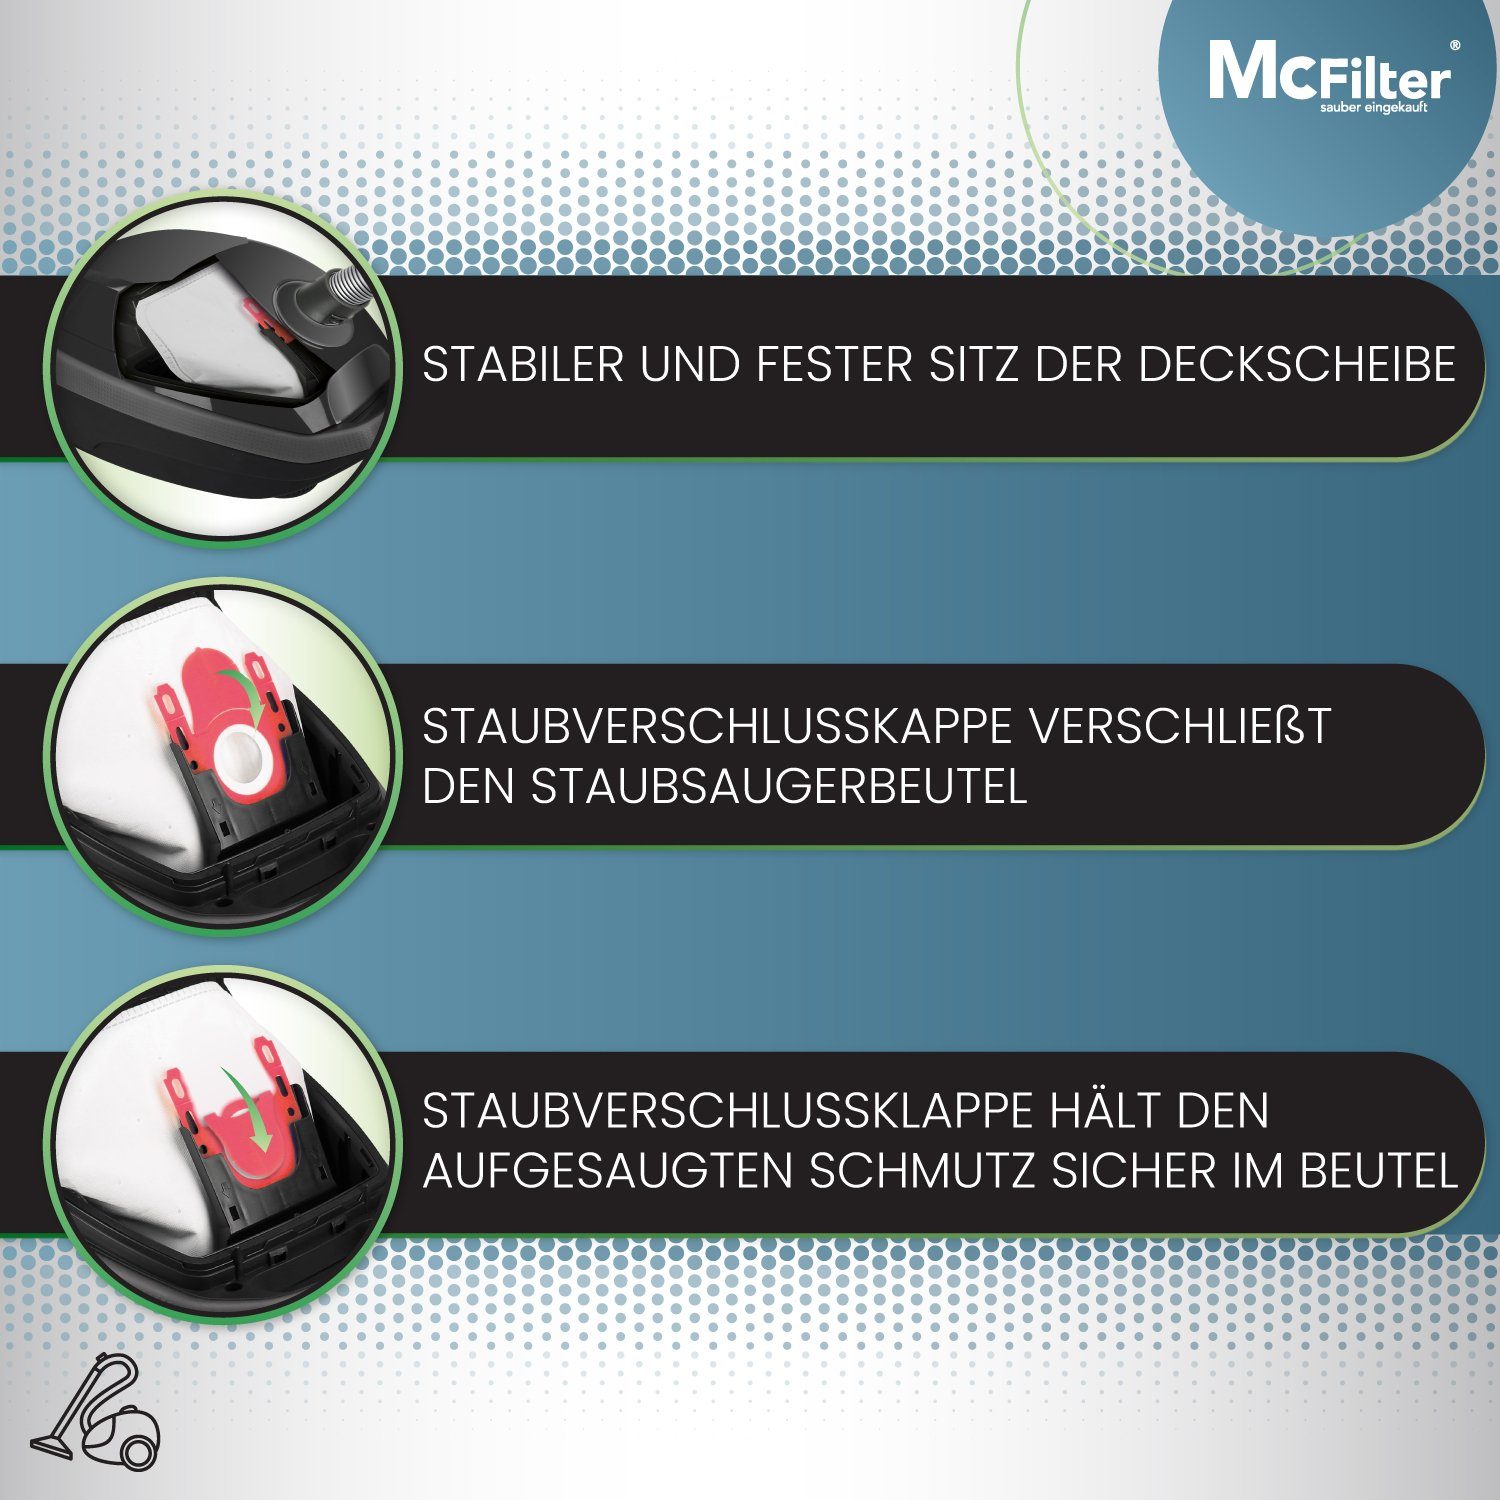 McFilter Staubsaugerbeutel 16 Stück, passend Staubbeutel Typ Bosch St., Staubverschluss, inkl. 4 für 16 mit allergy on - uvm., 8 G ALL, BBZ16FGALL Filter 6 4 5-lagiger (mini) GL-30 2 GL-20 move Serie Serie Serie Serie